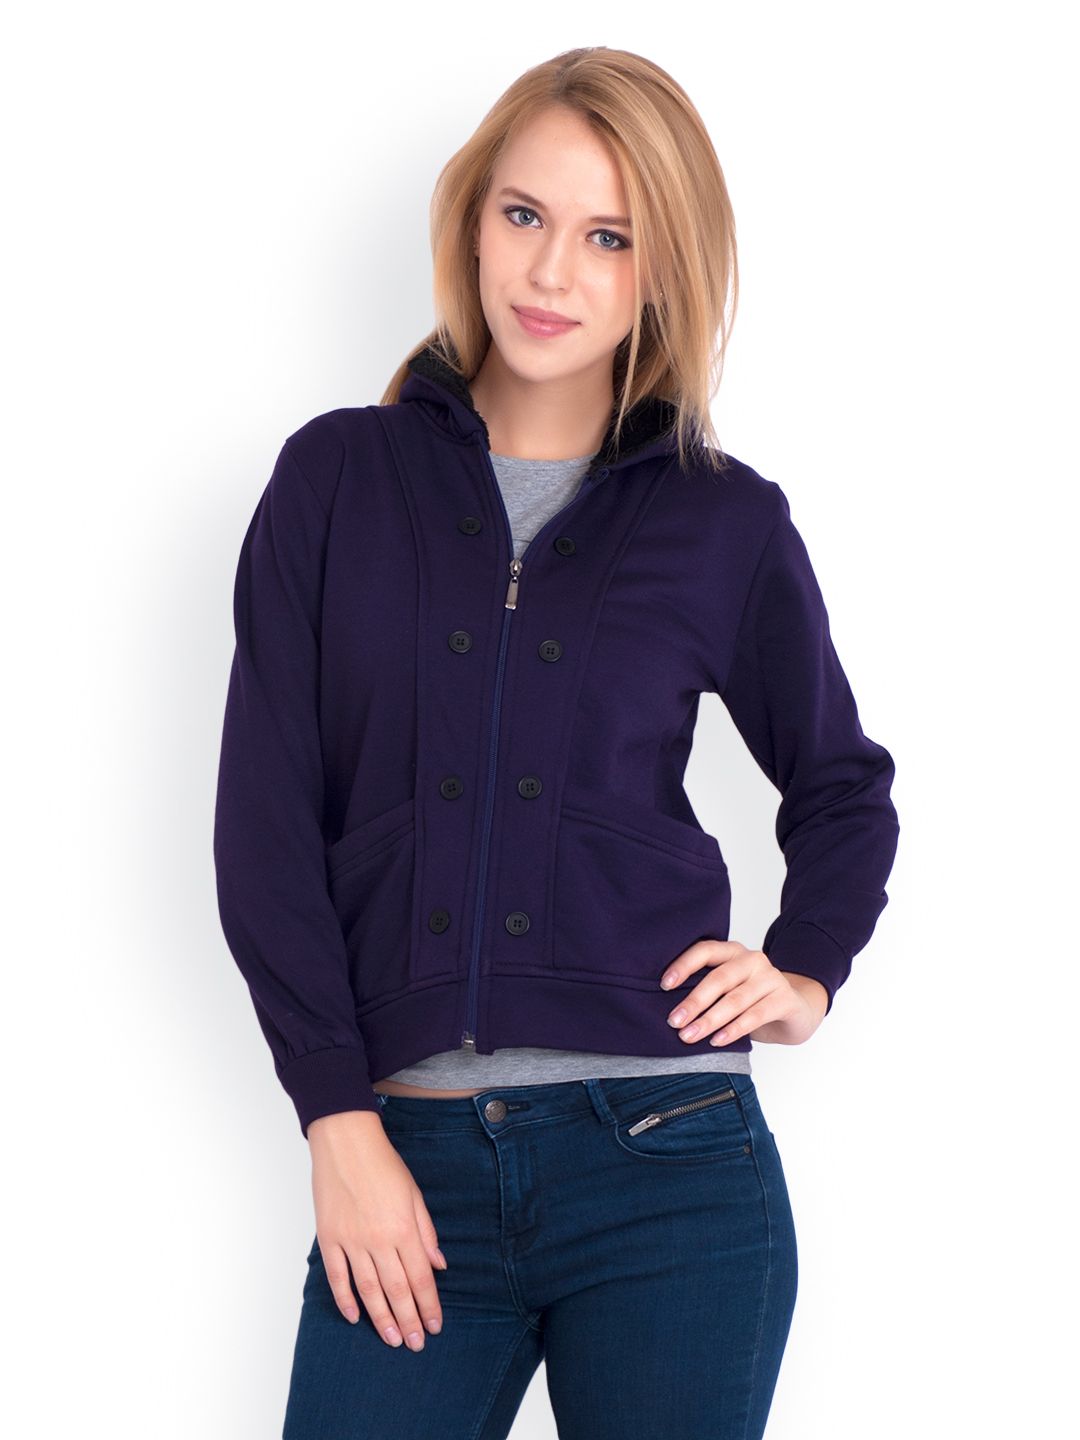 Belle Fille Women Purple Hooded Sweatshirt Price in India